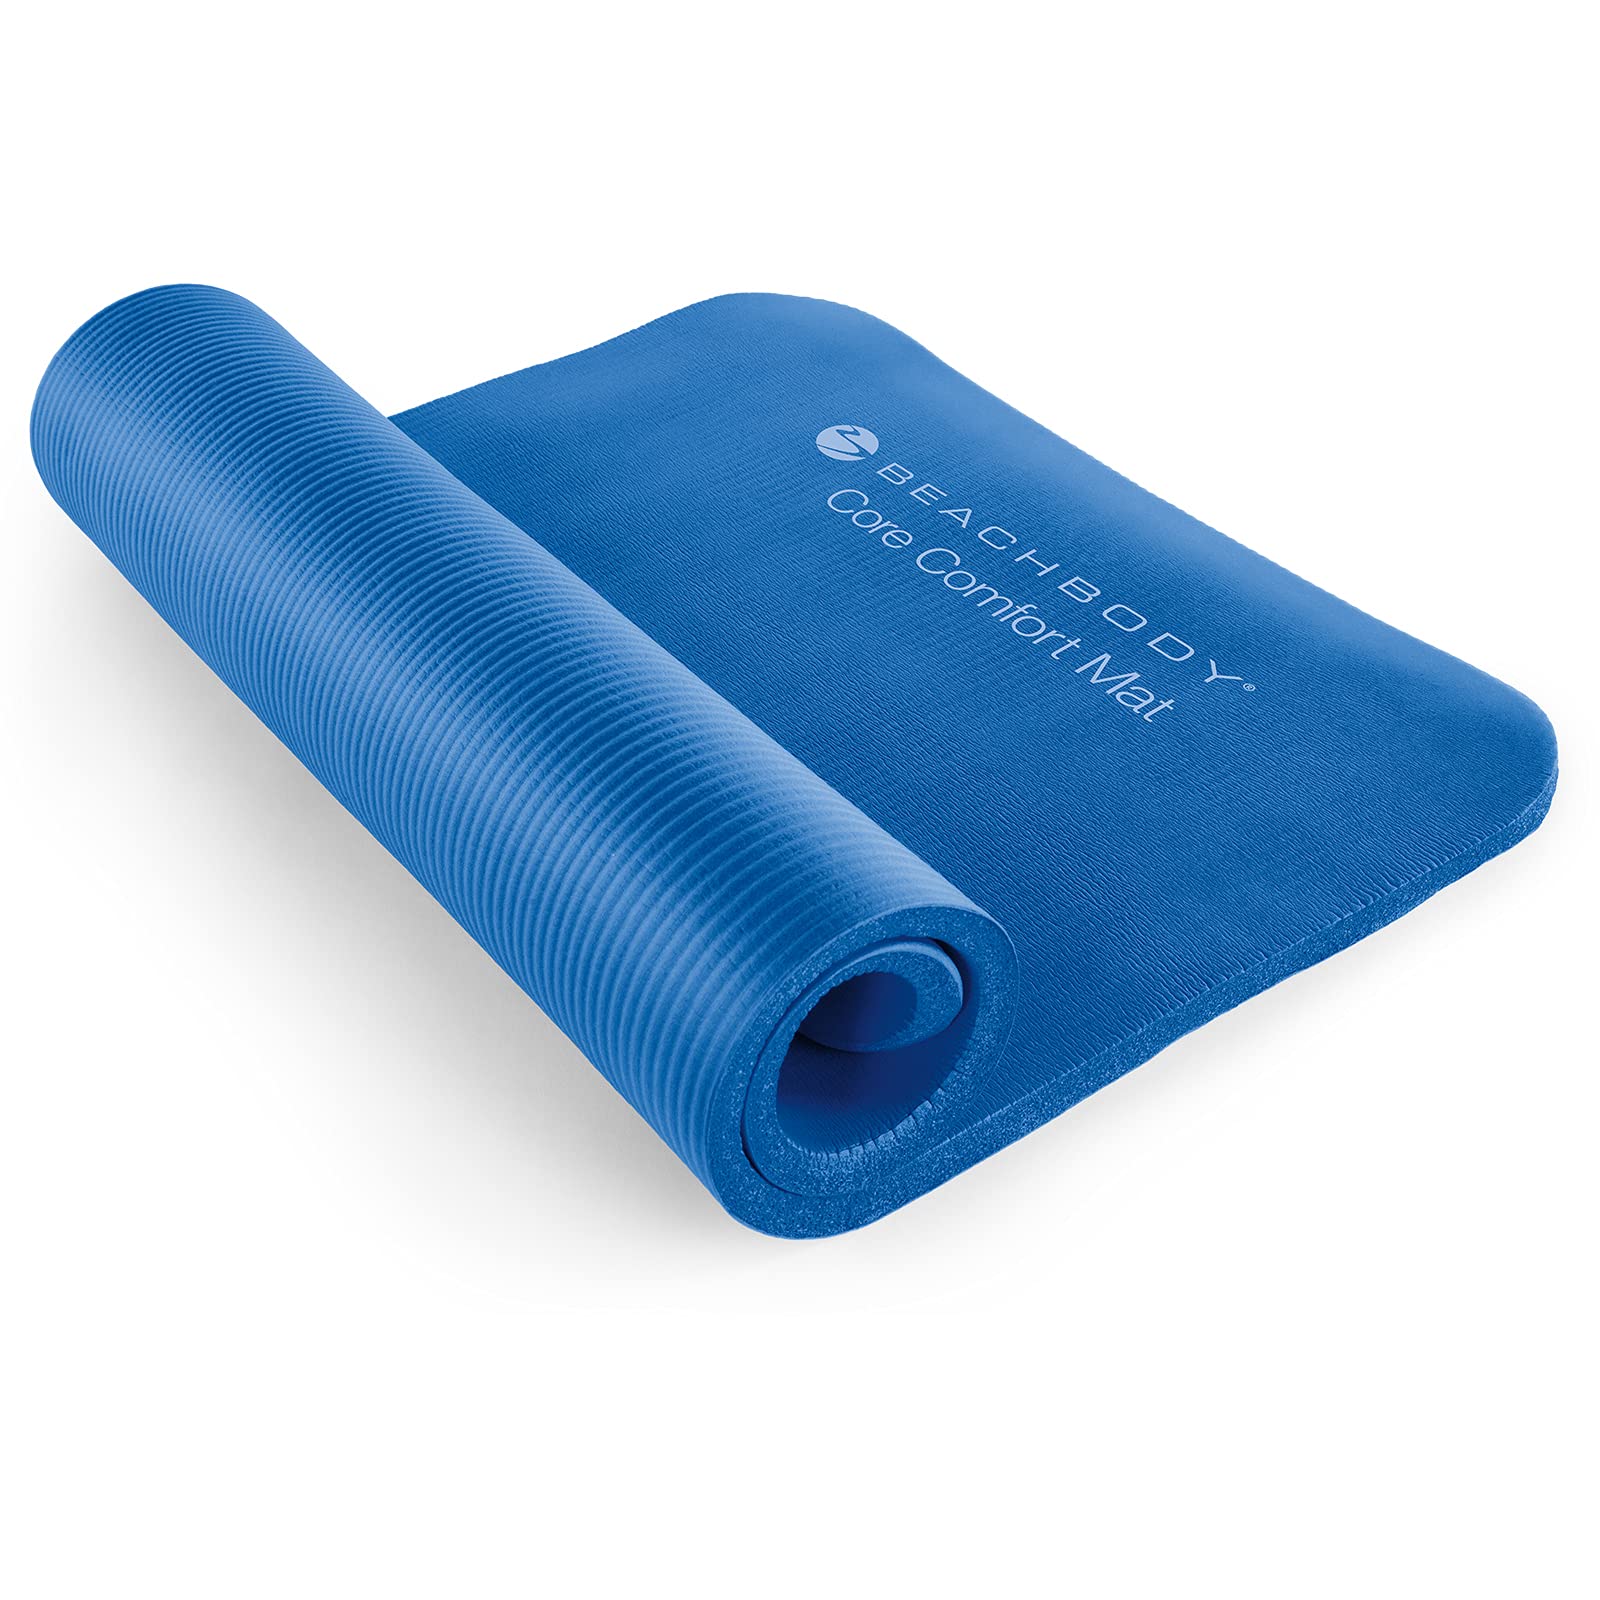 Durable & Comfortable Thick Yoga Mats